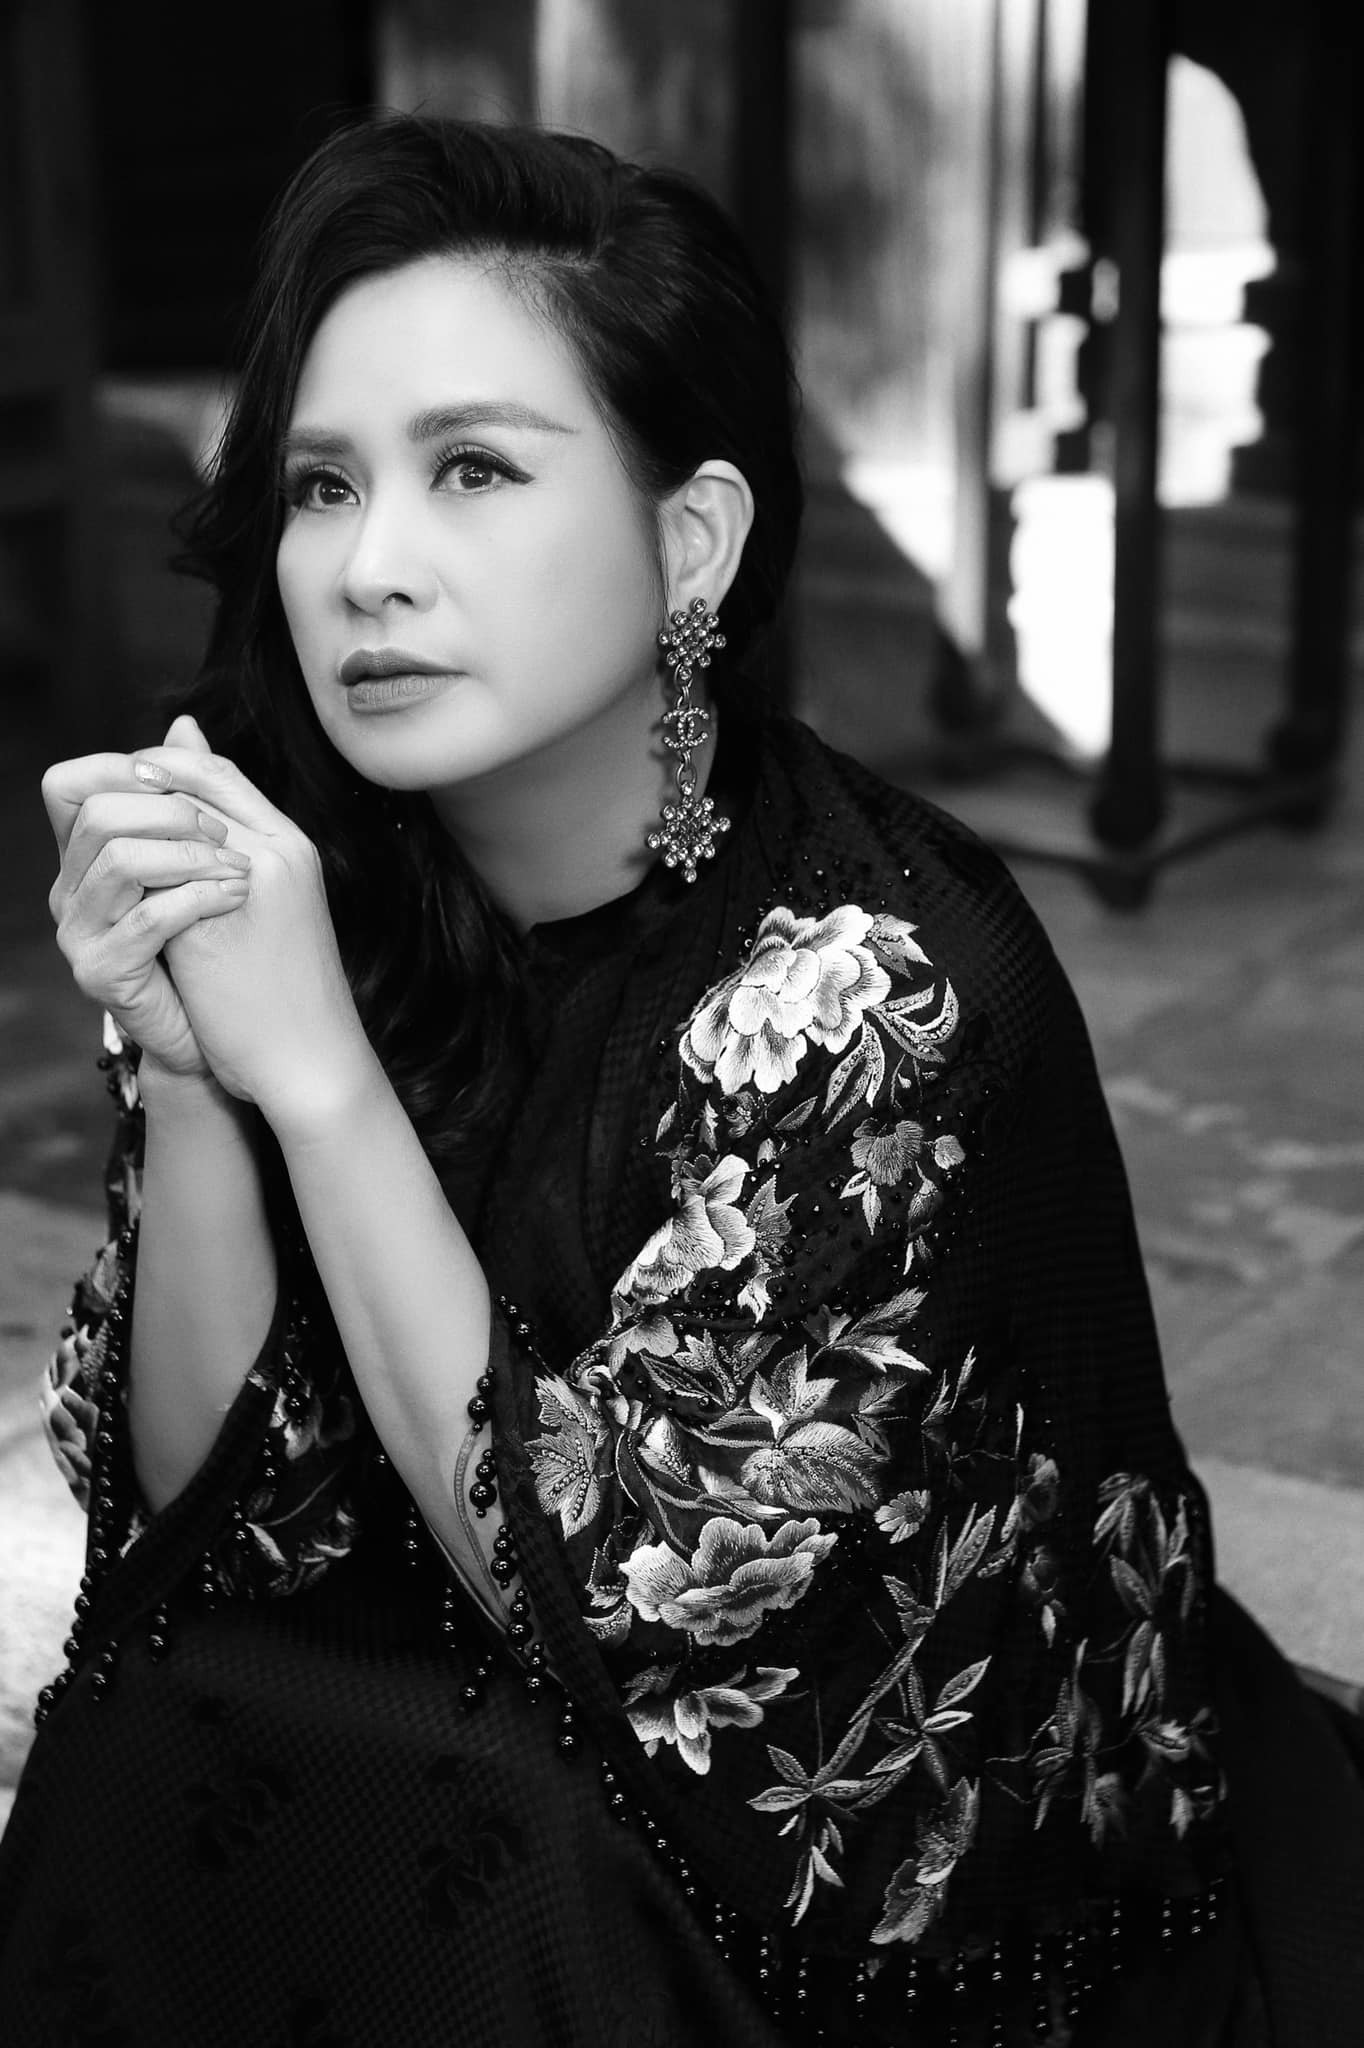 Loạt ảnh chân dung mới đẹp ma mị của diva Thanh Lam - 11